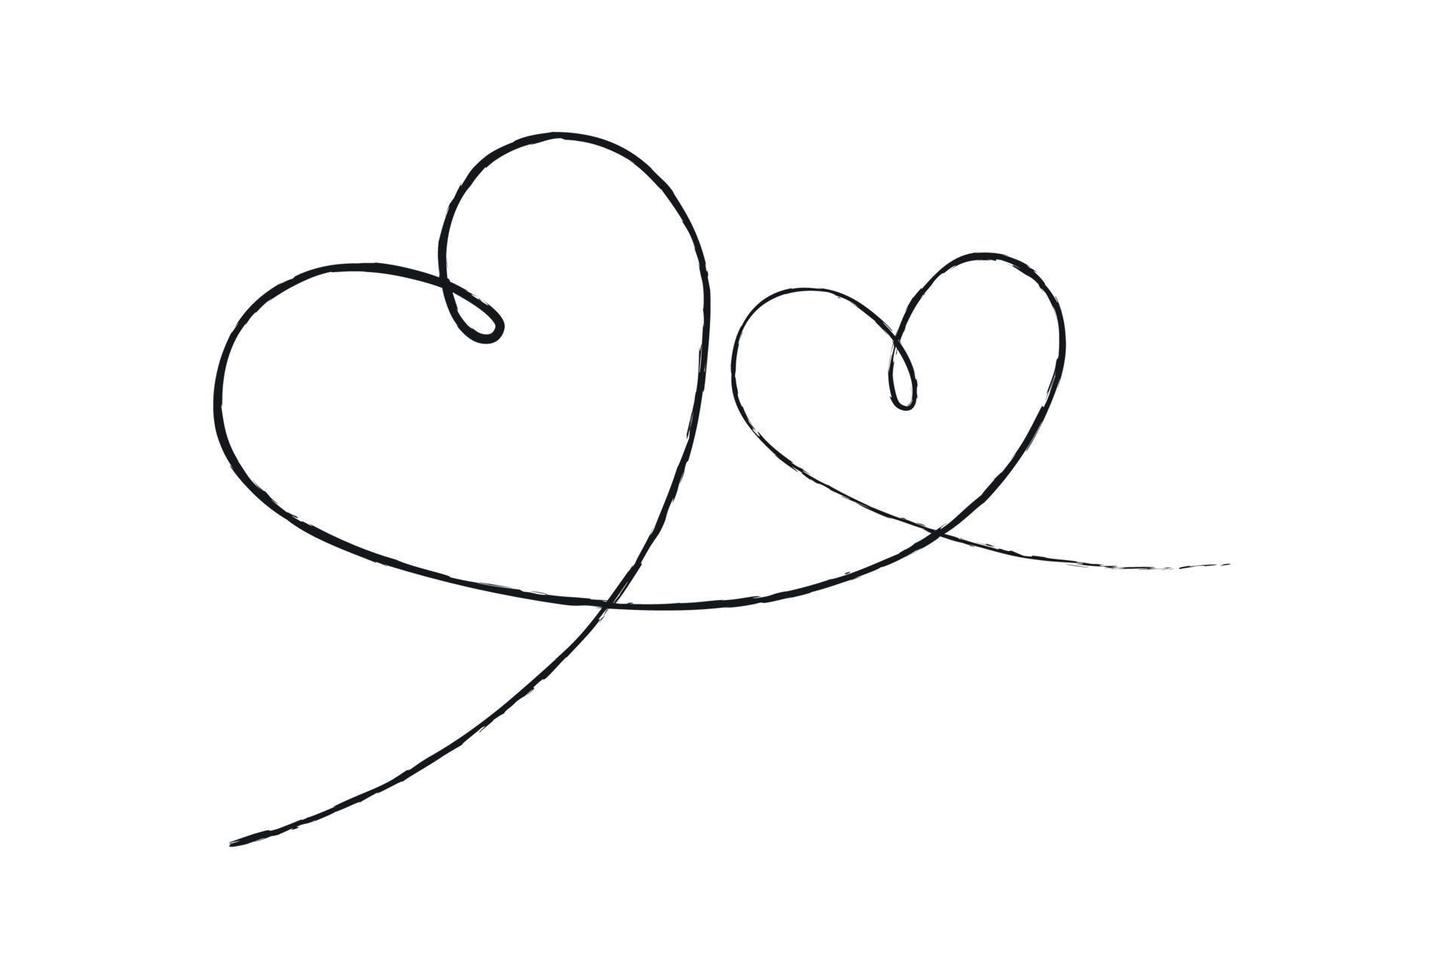 schwarze dünne Linien zwei Liebesherzen auf weißem Hintergrund - Vektor